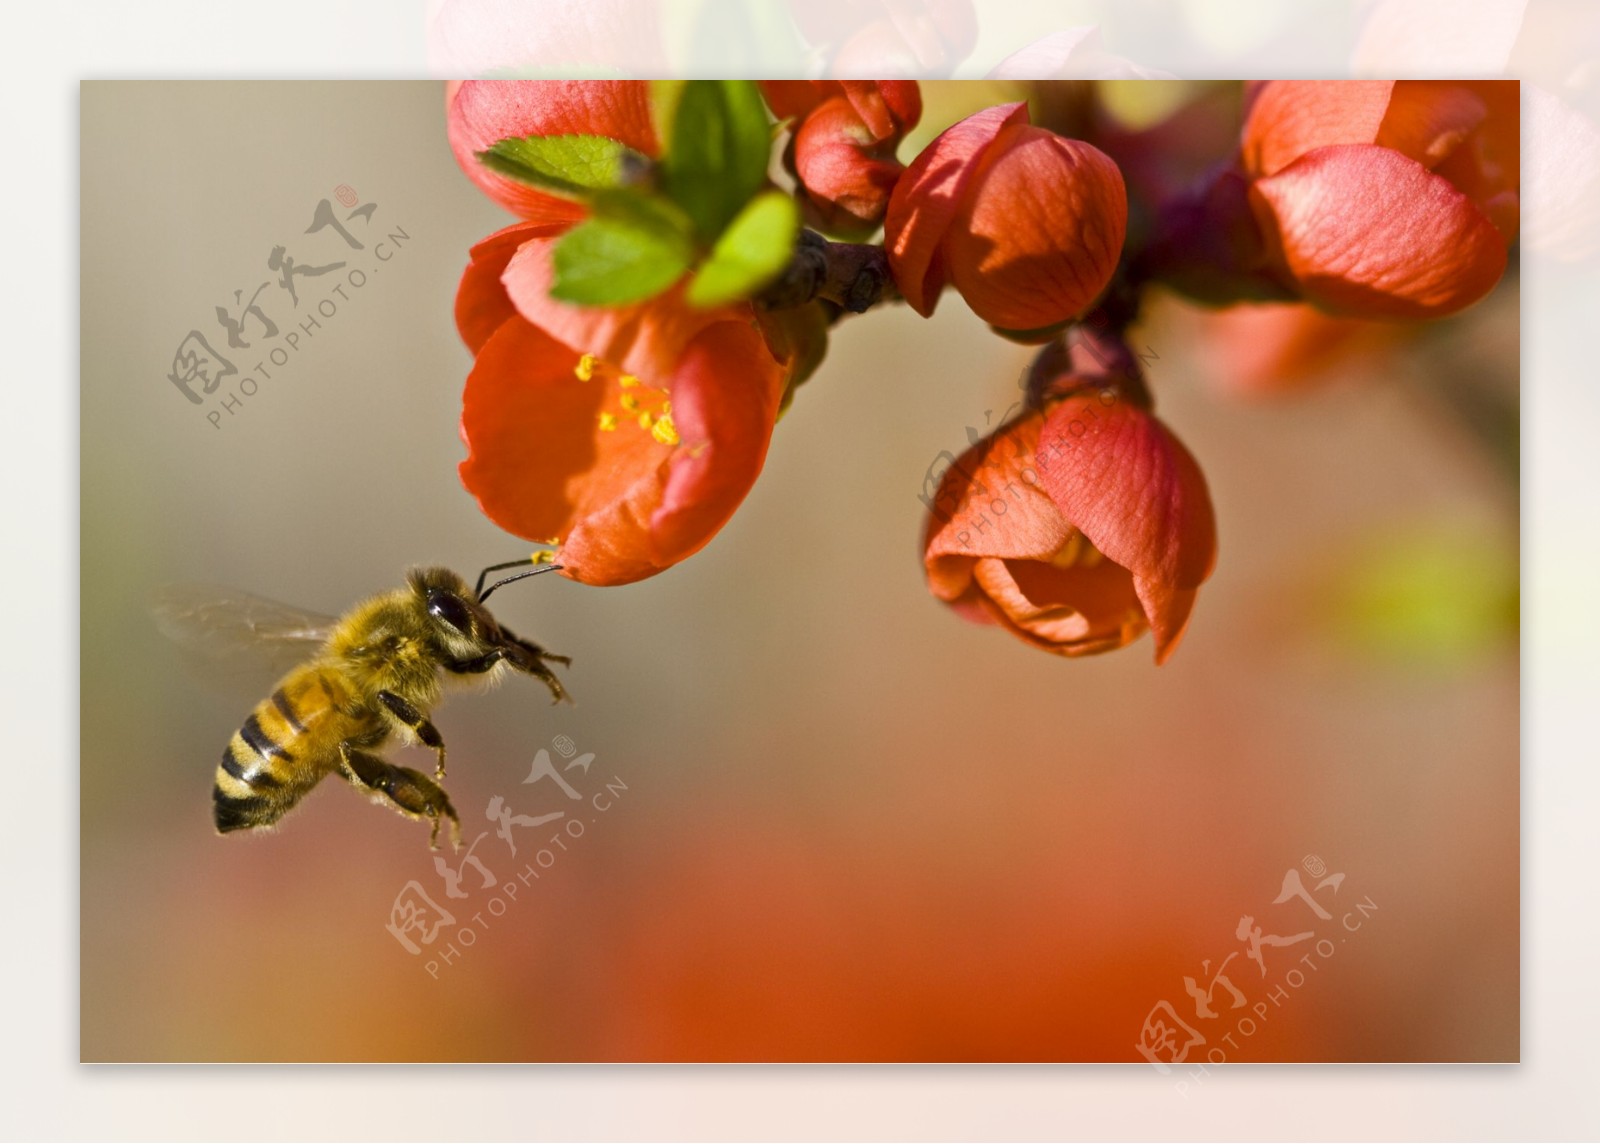 蜜蜂授粉图片